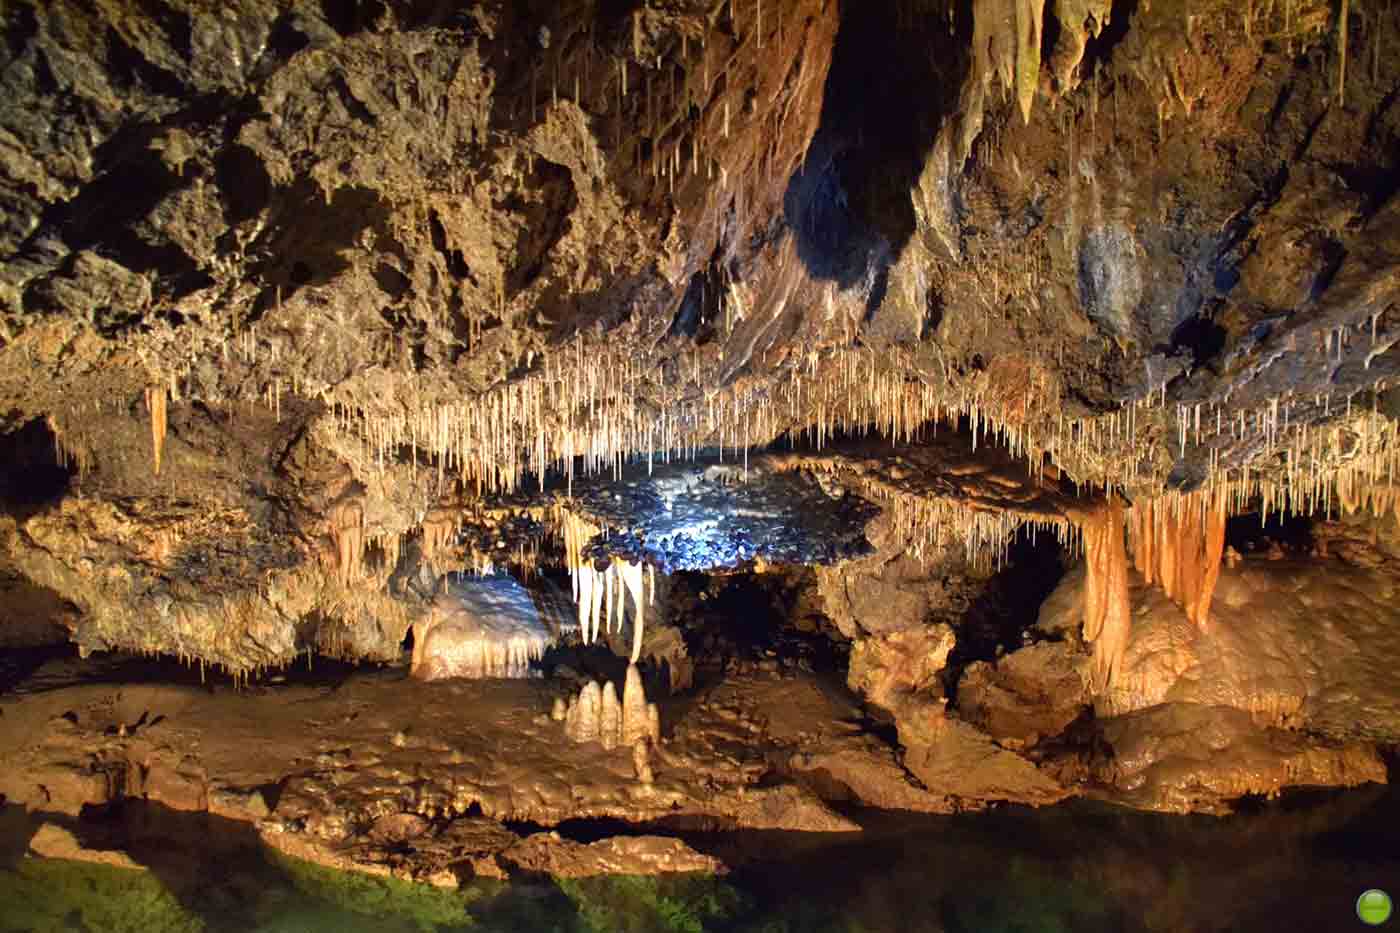 Demanovska Cave of Liberty